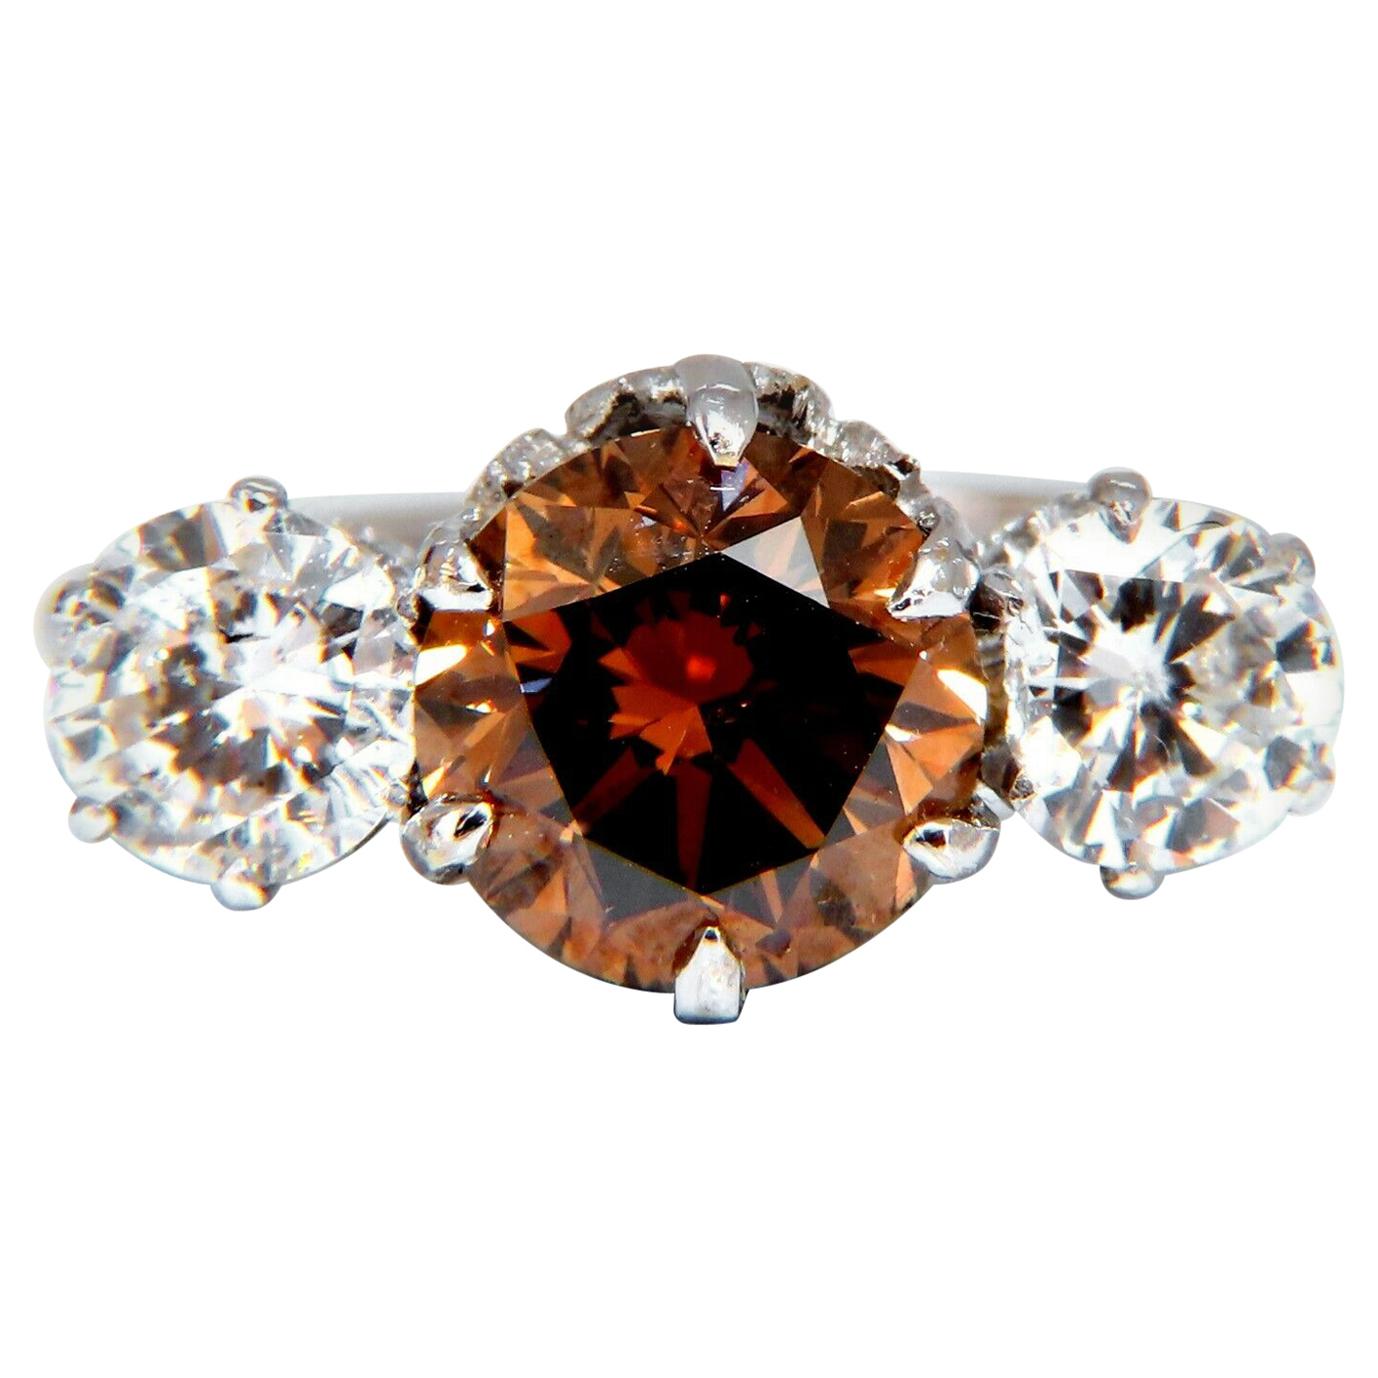 GIA Certified 3.64 Carat Fancy Brown Orange Diamond Ring 18 Karat Three-Stone